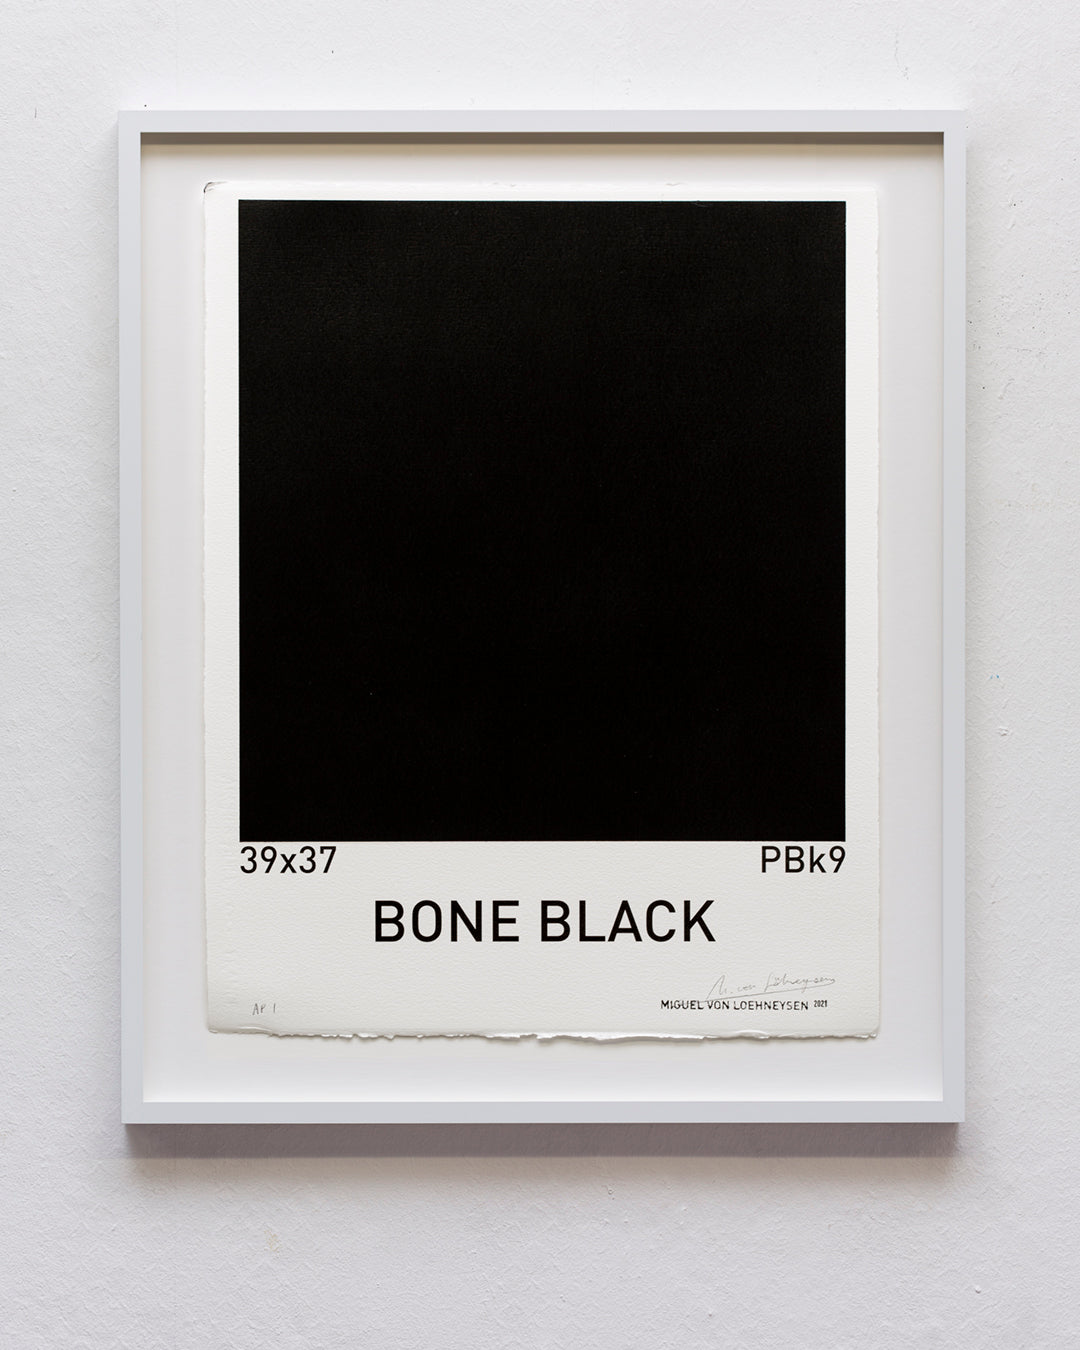 Bone Black (39x37/PBk9)